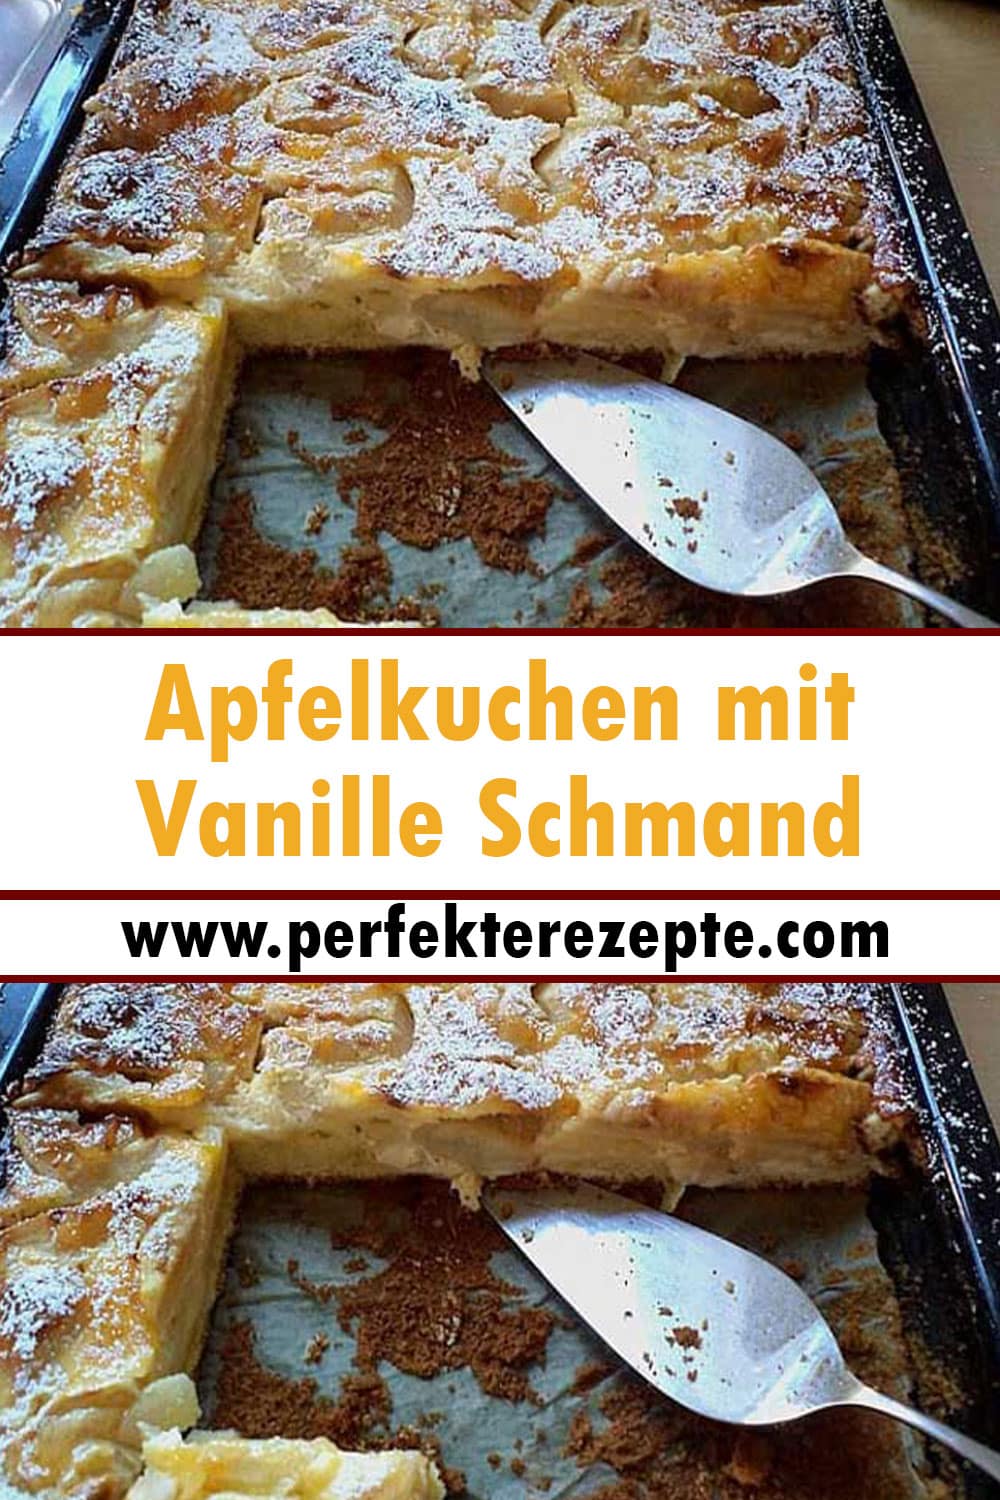 Apfelkuchen mit leckeres Vanille Schmand Rezept